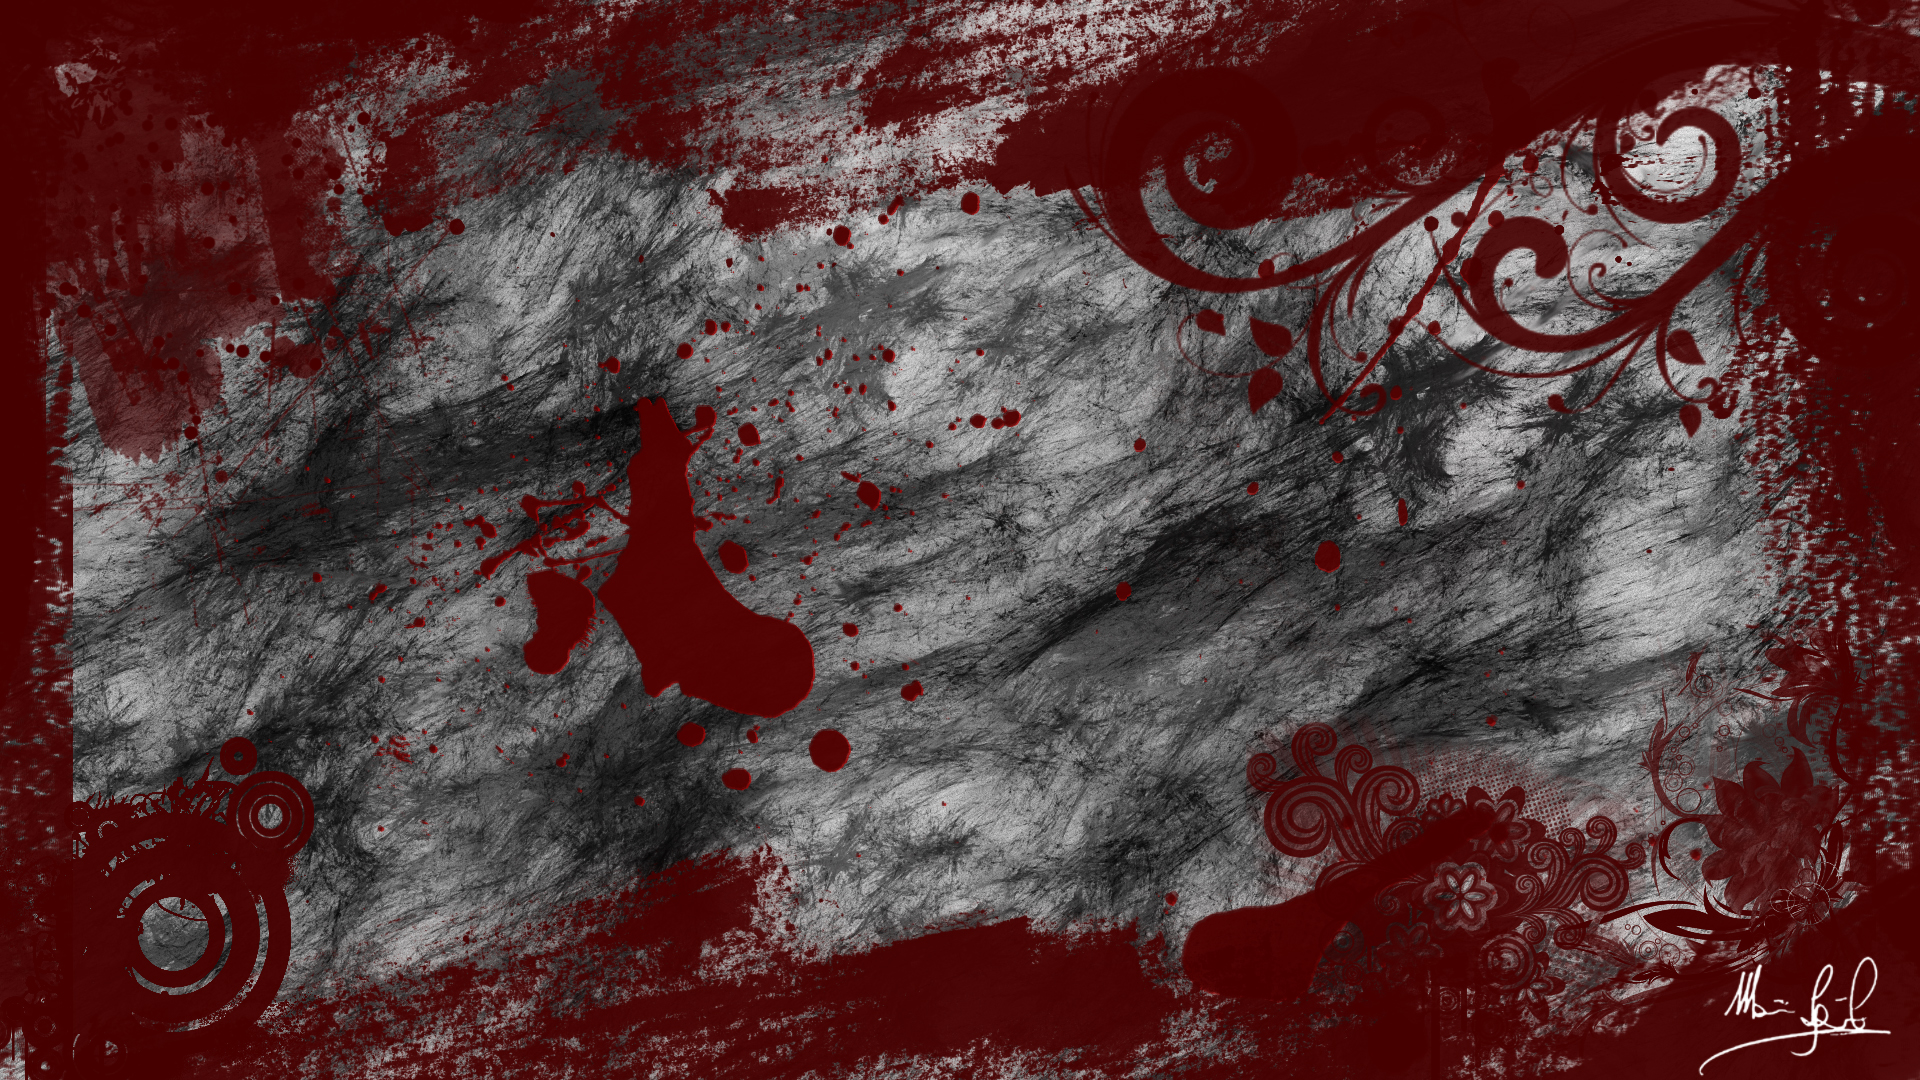 Blood wallpaper by theartofdarkness on